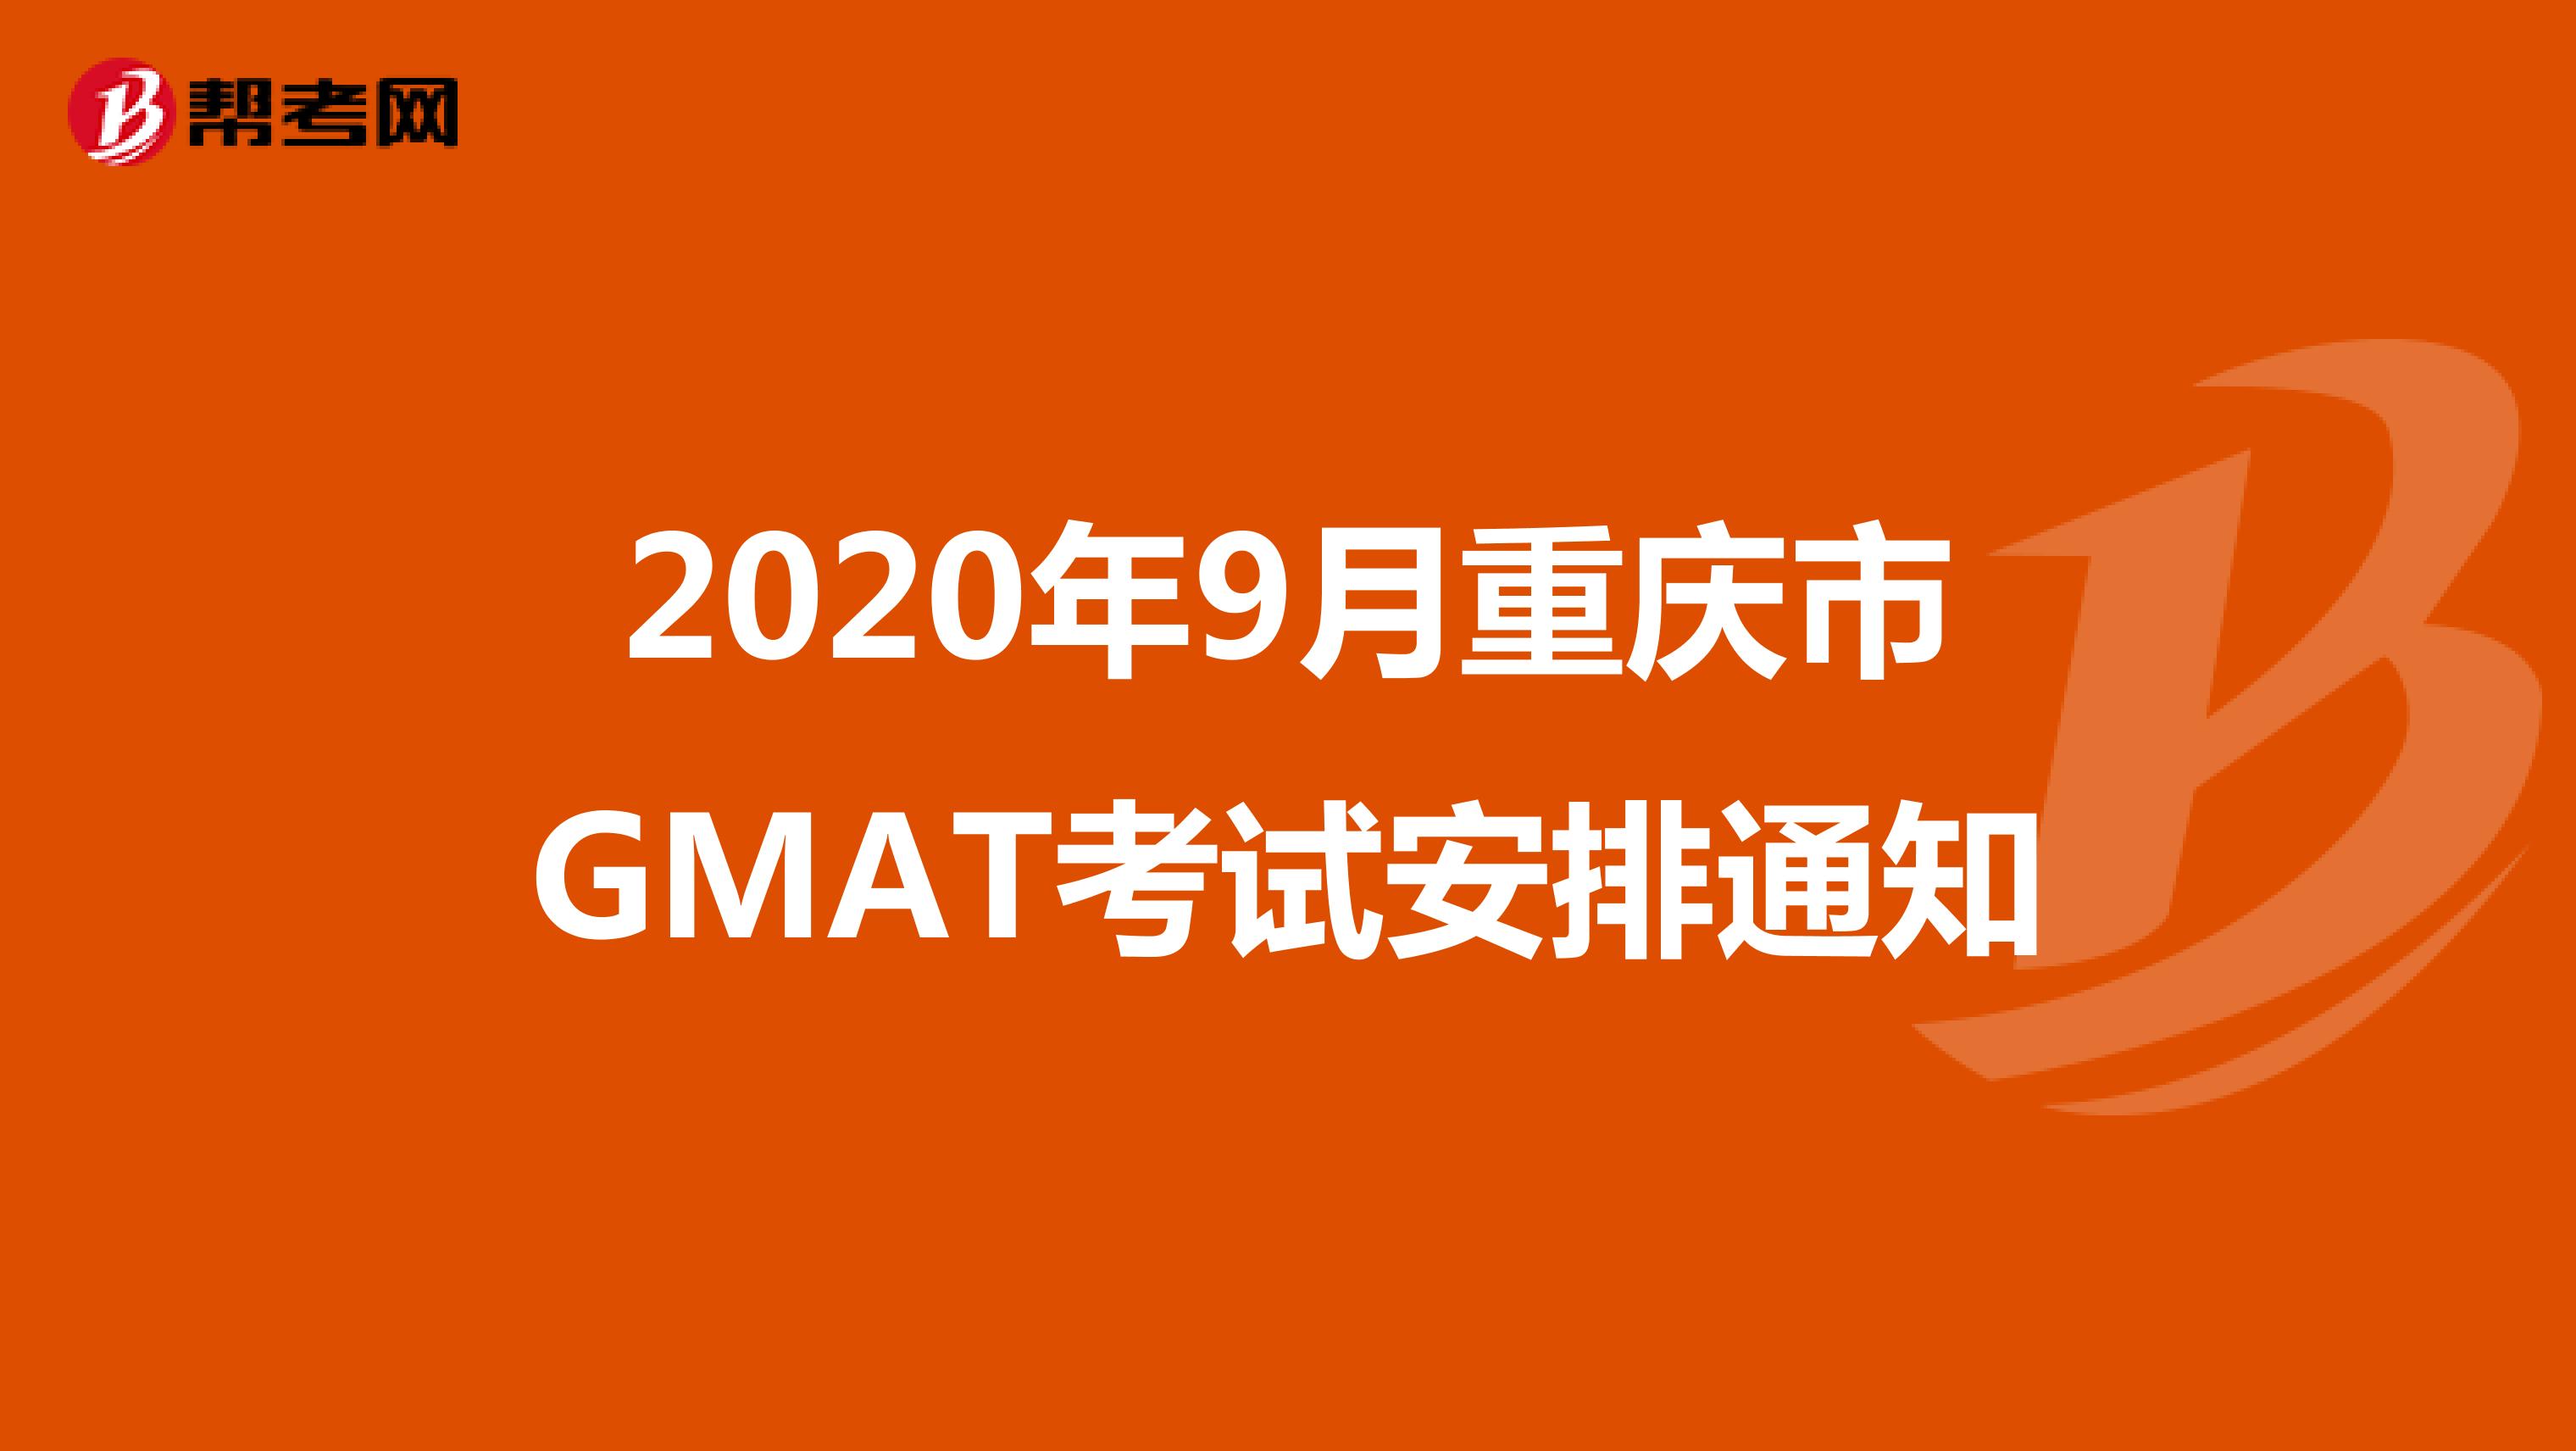 2020年9月重庆市GMAT考试安排通知